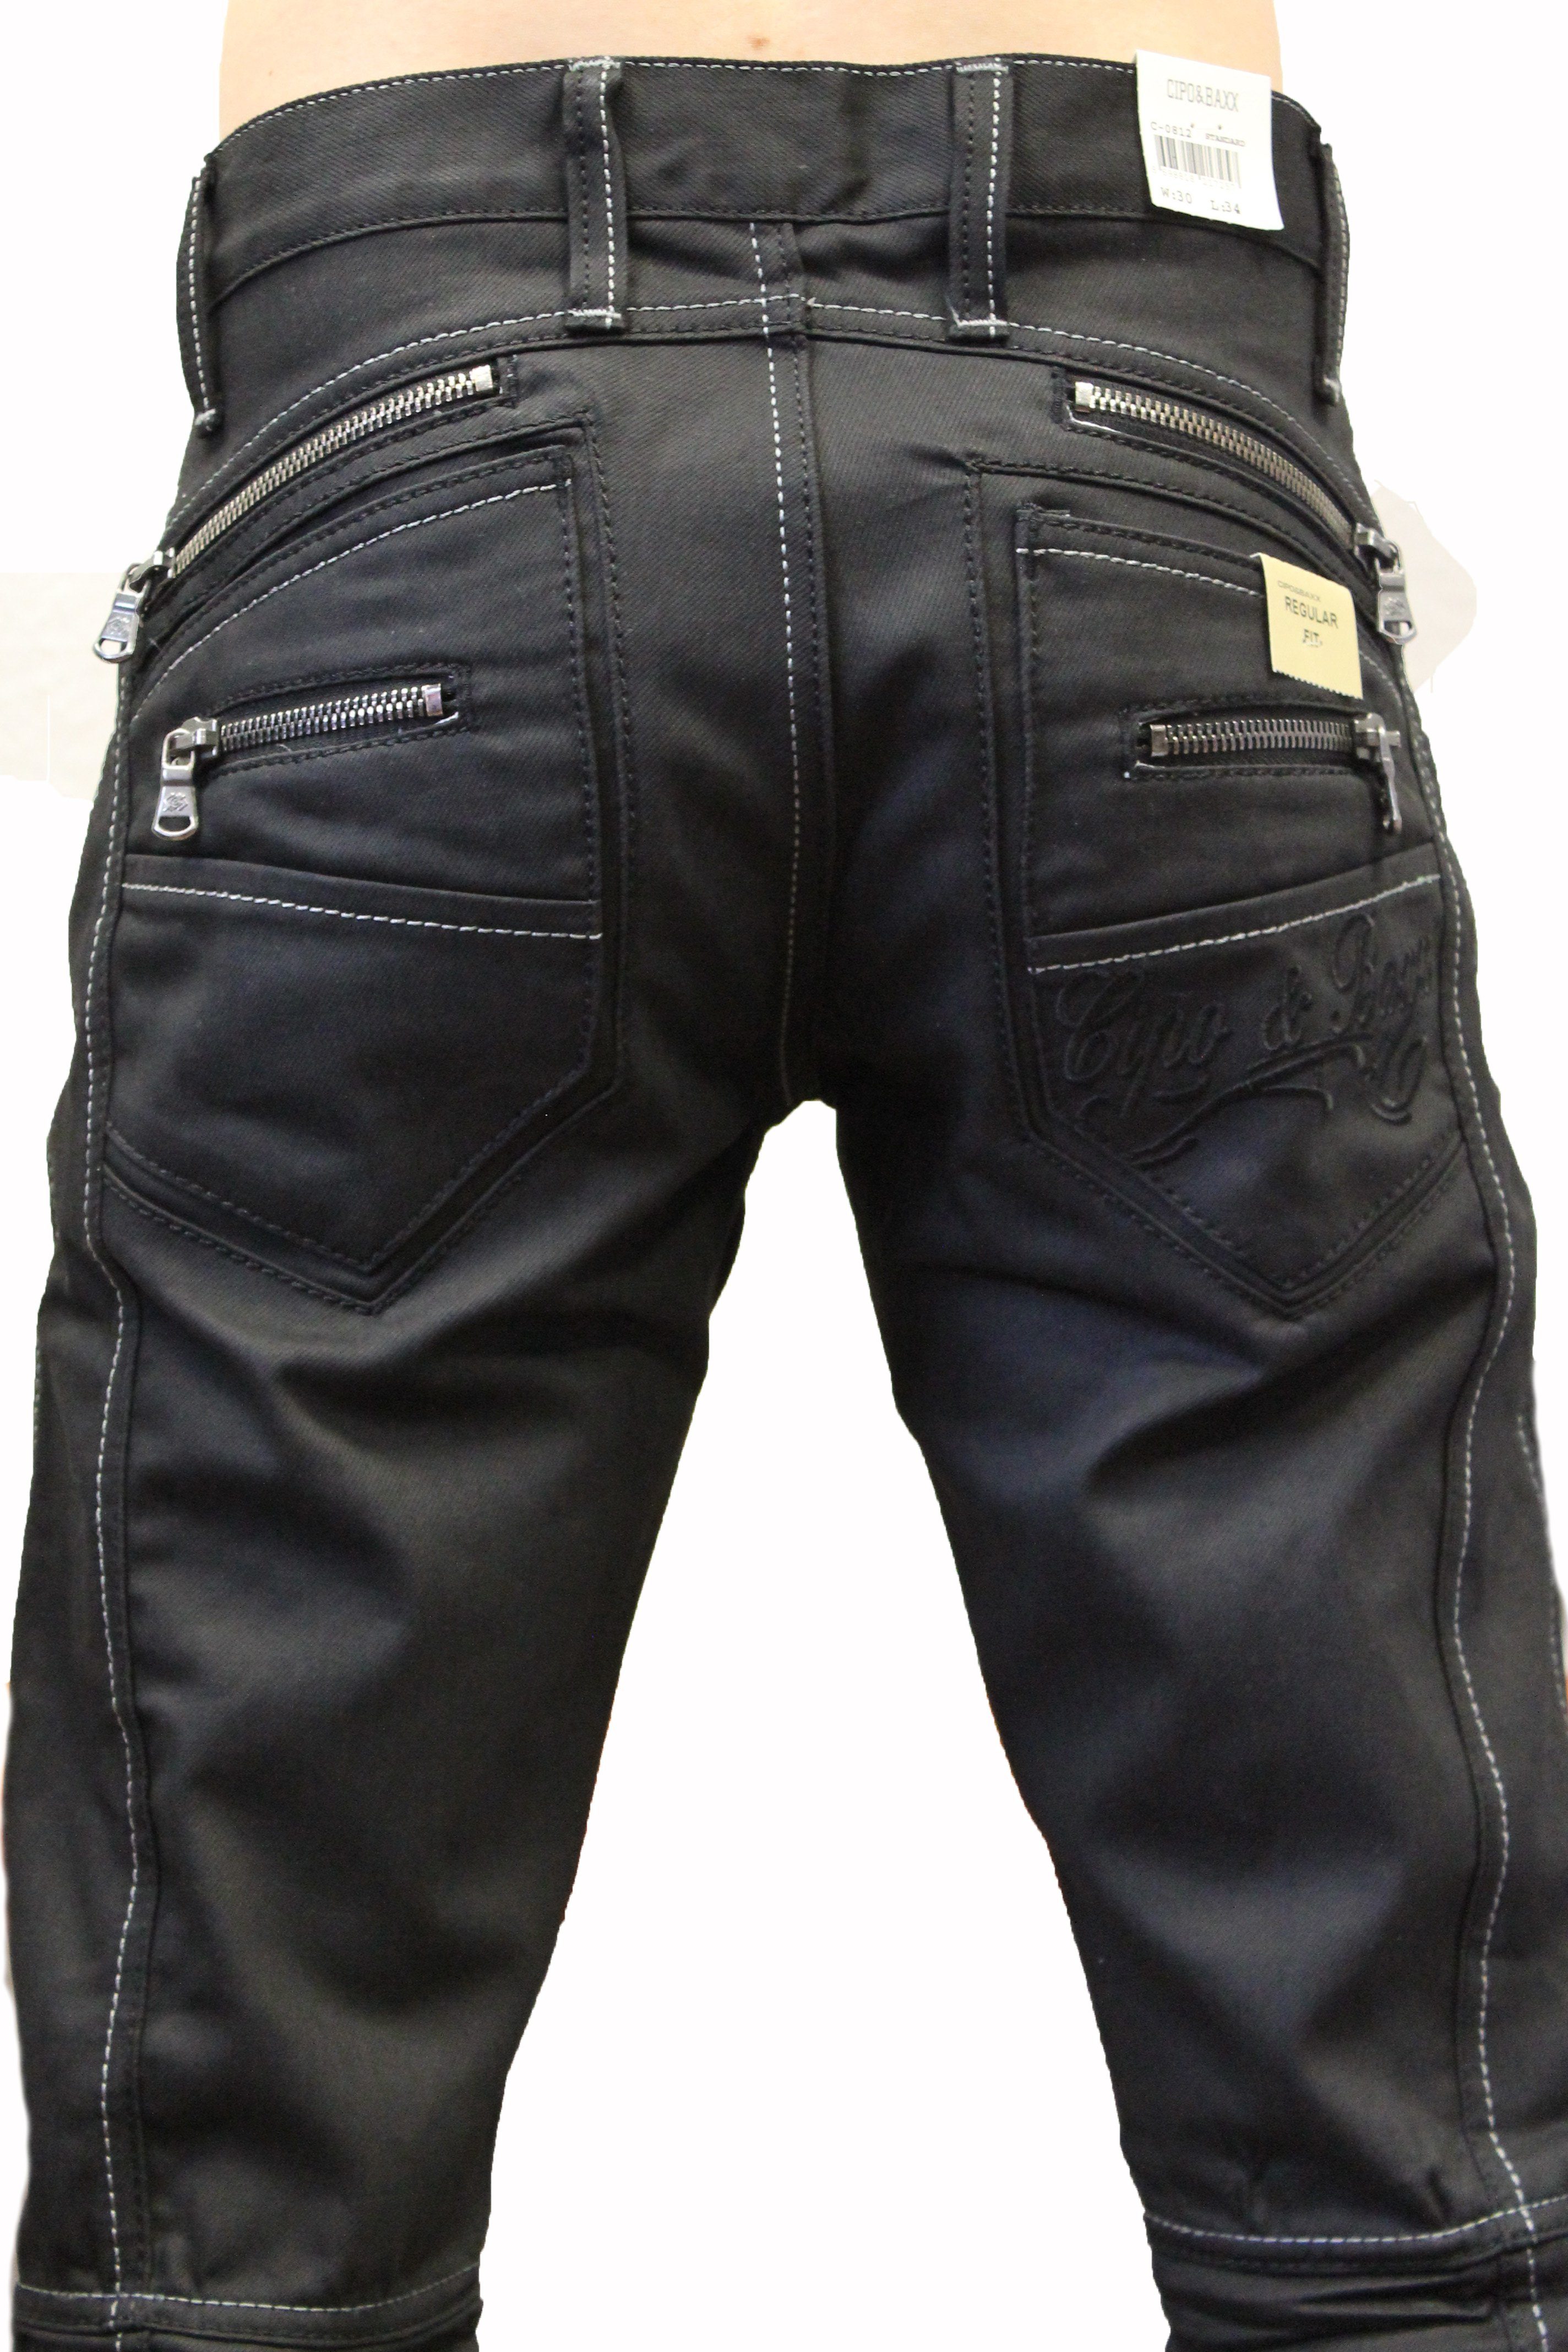 Waschung stylische mit und Weiße & Regular-fit-Jeans Baxx ausgefallenem Herren und Hose Kontrastnähte Jeans Design gewachster Cipo Zipper